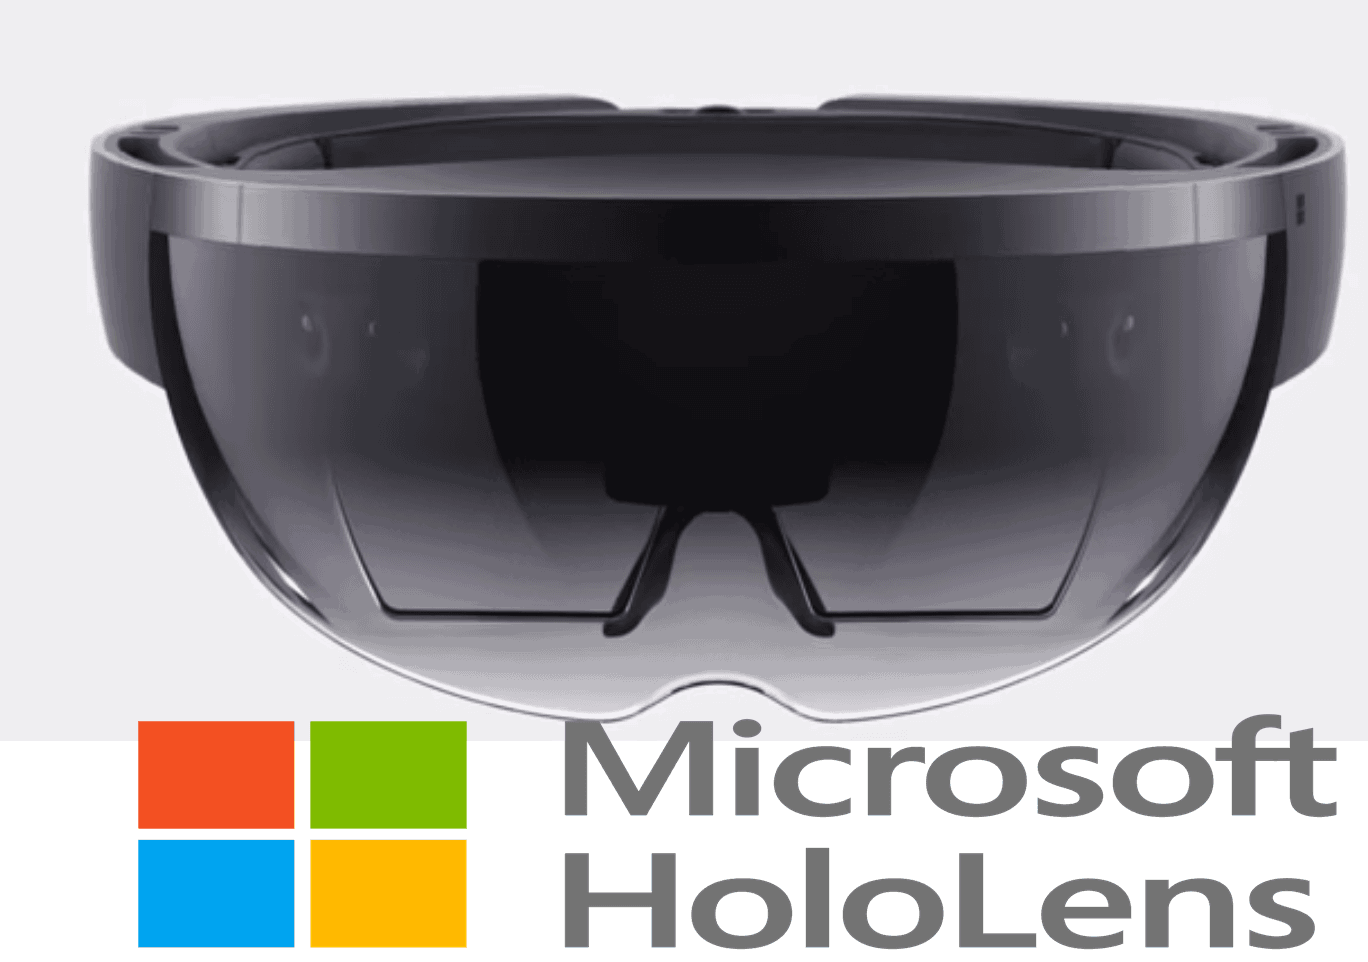 Impressive live demonstration of the HoloLens